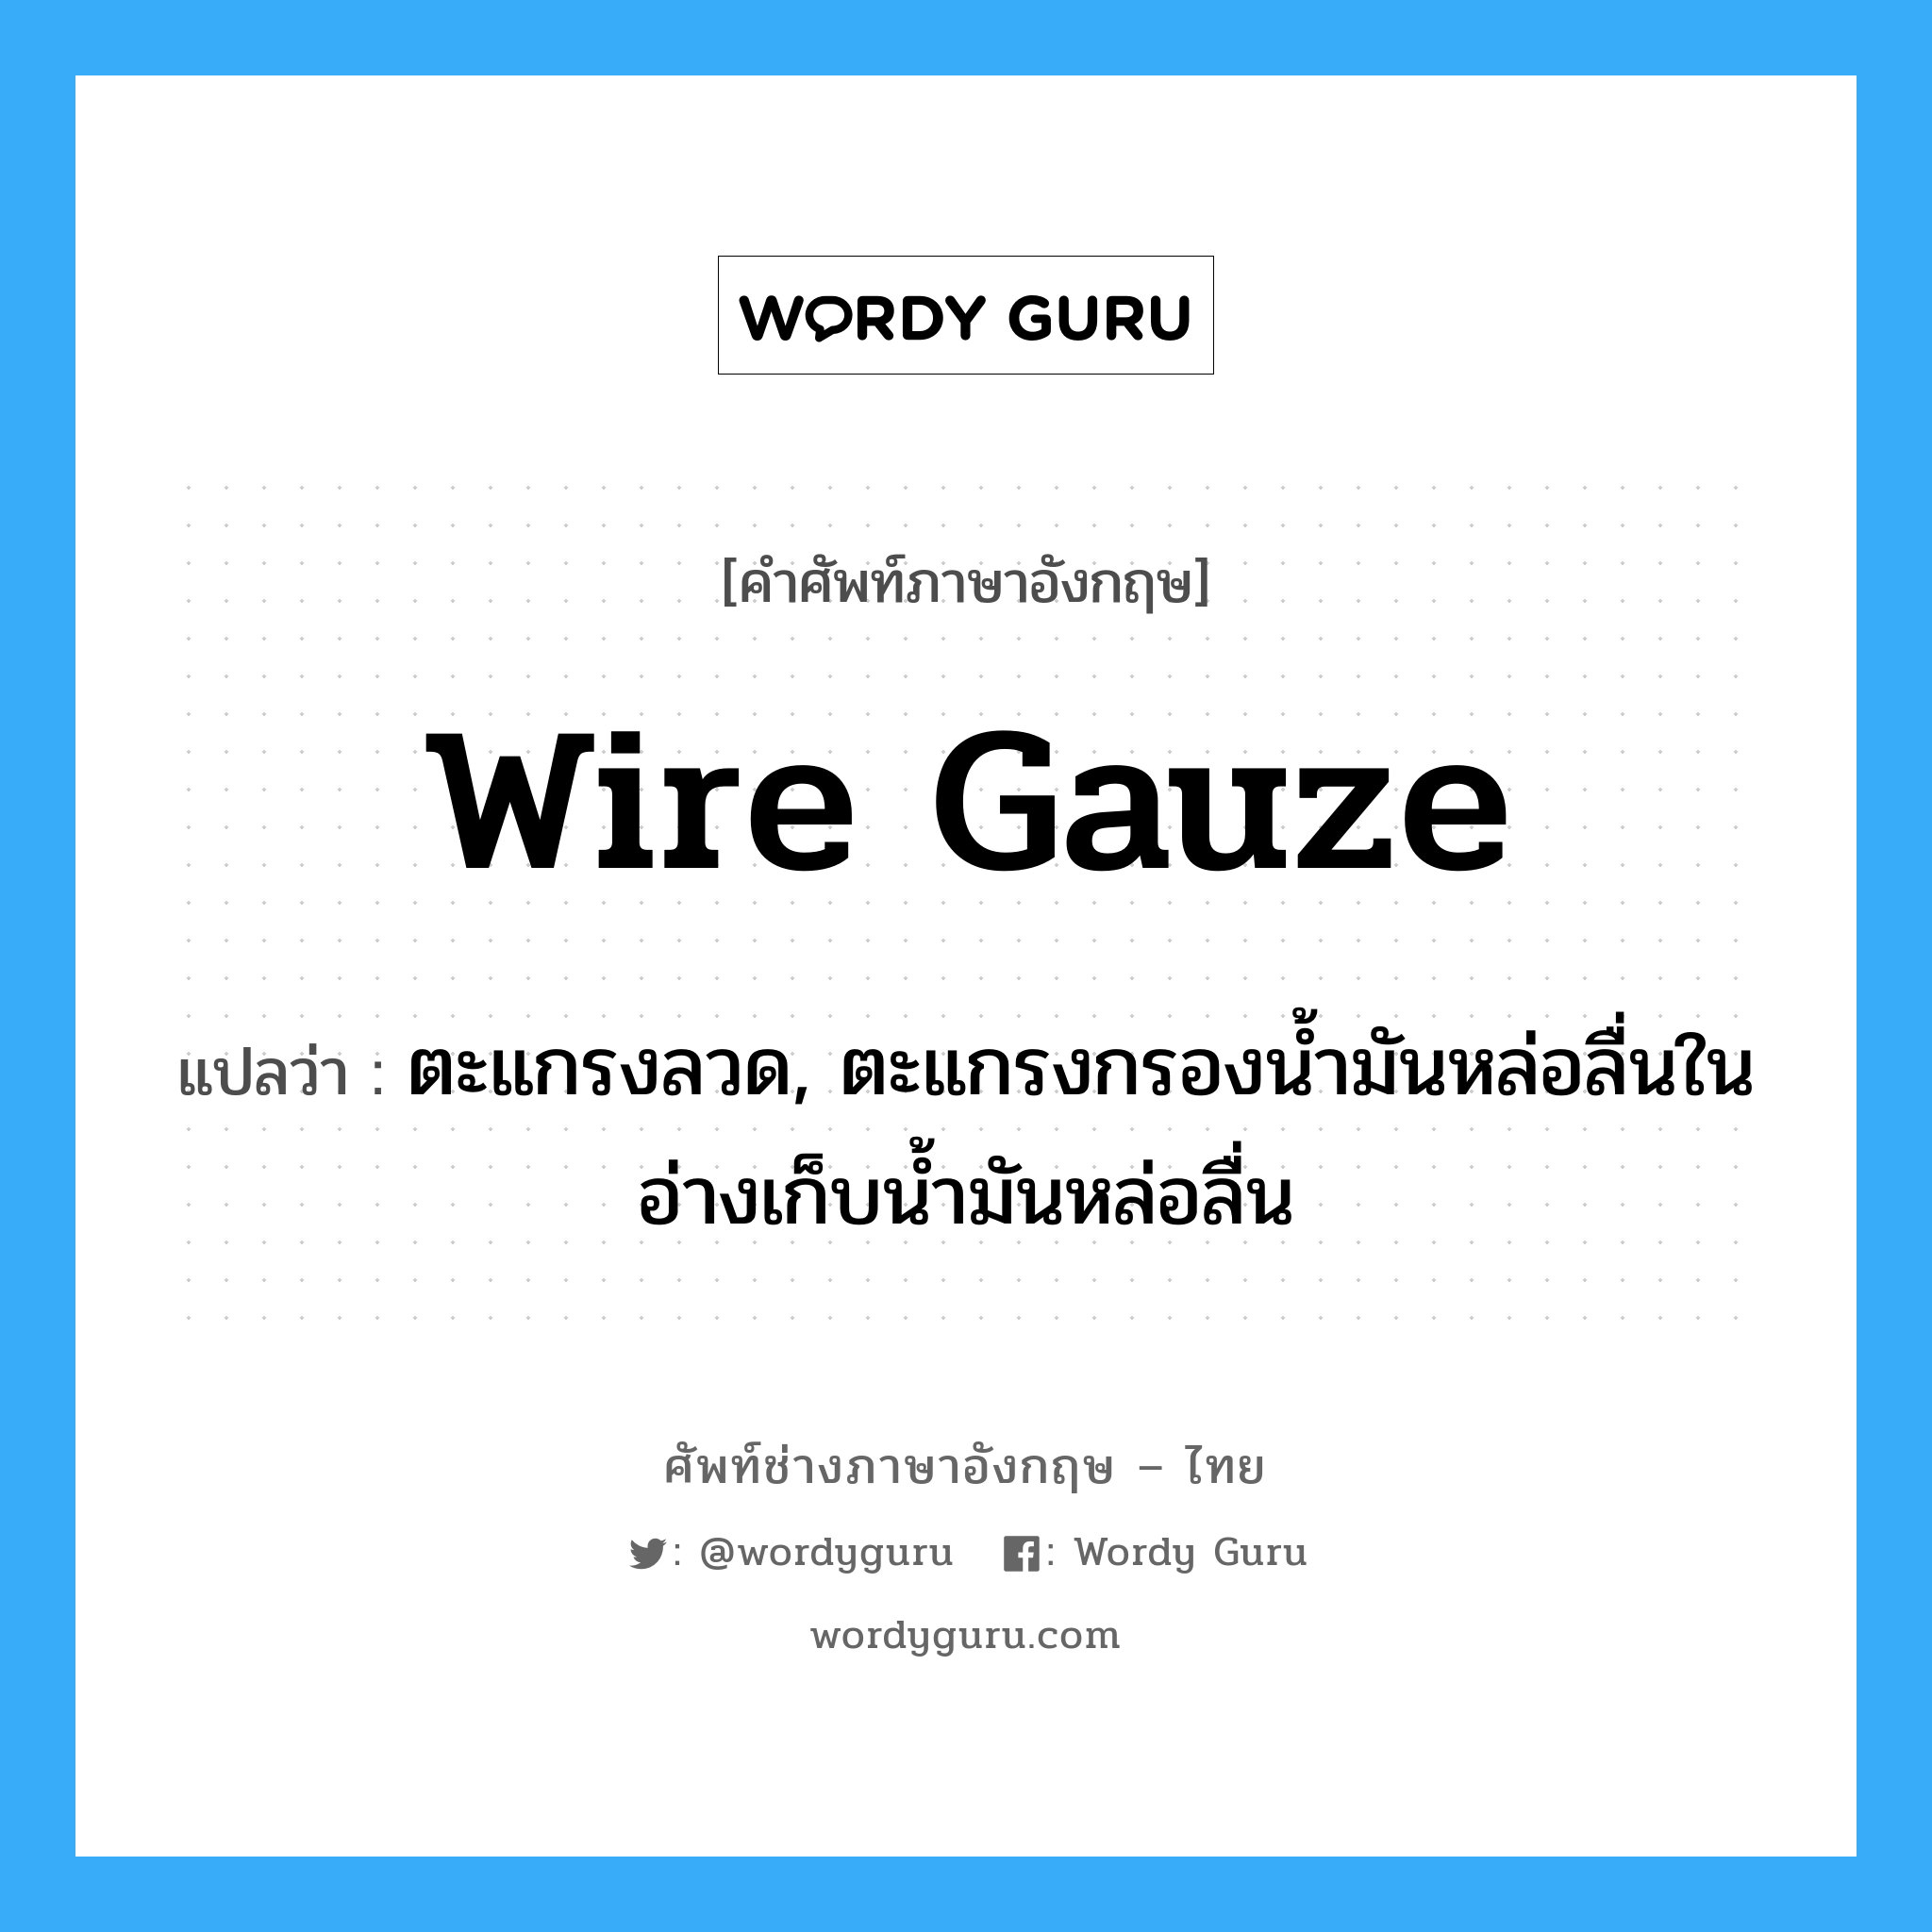 wire gauze แปลว่า?, คำศัพท์ช่างภาษาอังกฤษ - ไทย wire gauze คำศัพท์ภาษาอังกฤษ wire gauze แปลว่า ตะแกรงลวด, ตะแกรงกรองน้ำมันหล่อลื่นในอ่างเก็บน้ำมันหล่อลื่น